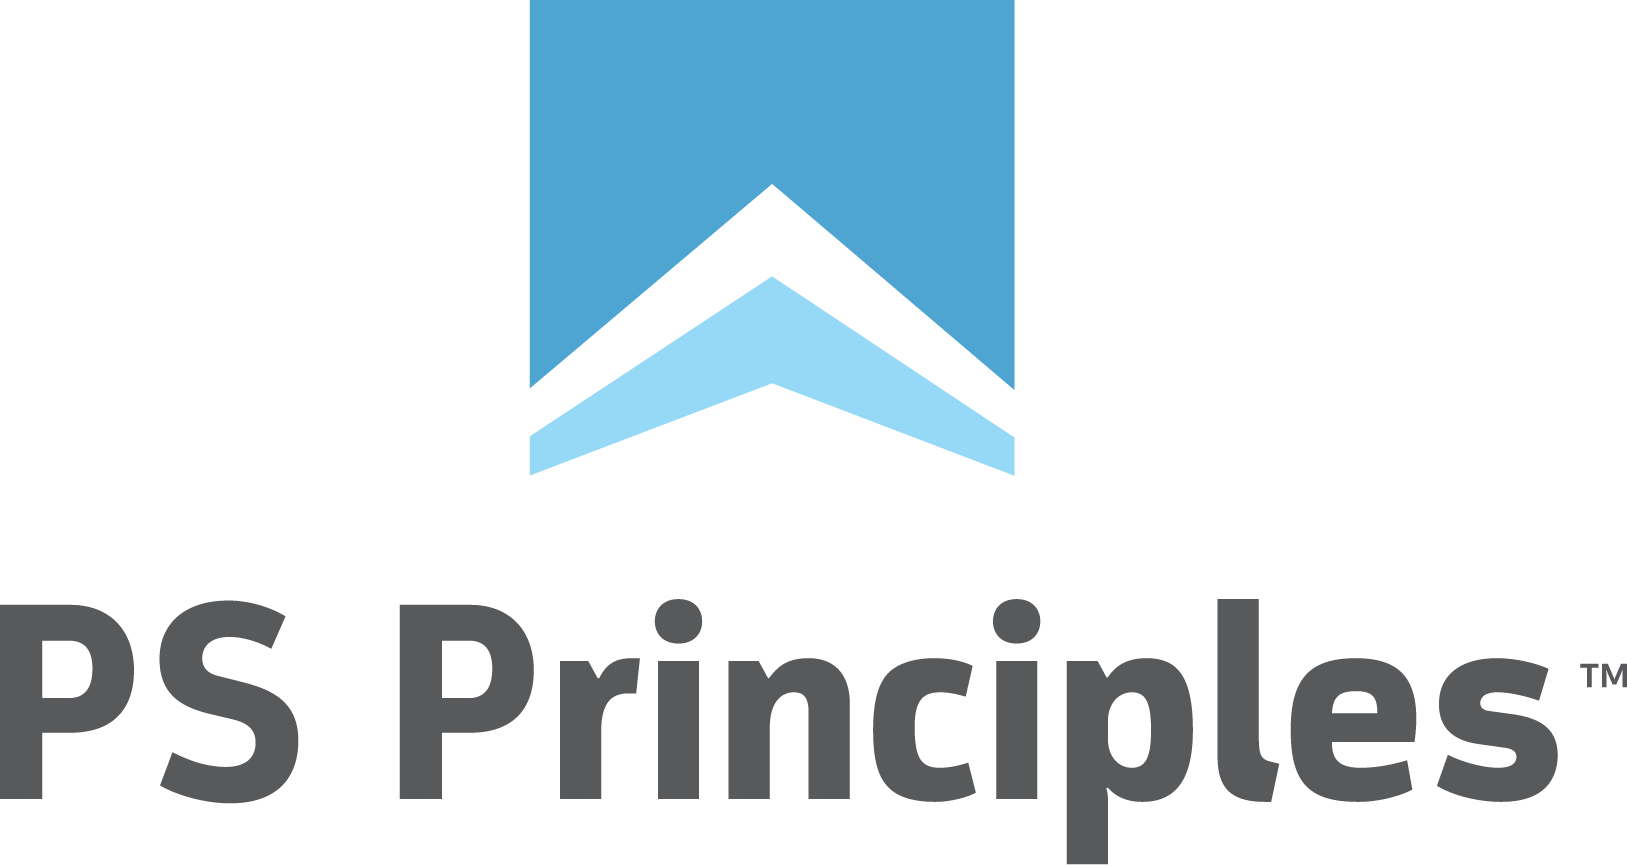 PS-principles-logos-all_PS-principles-logo-stacked-RGB